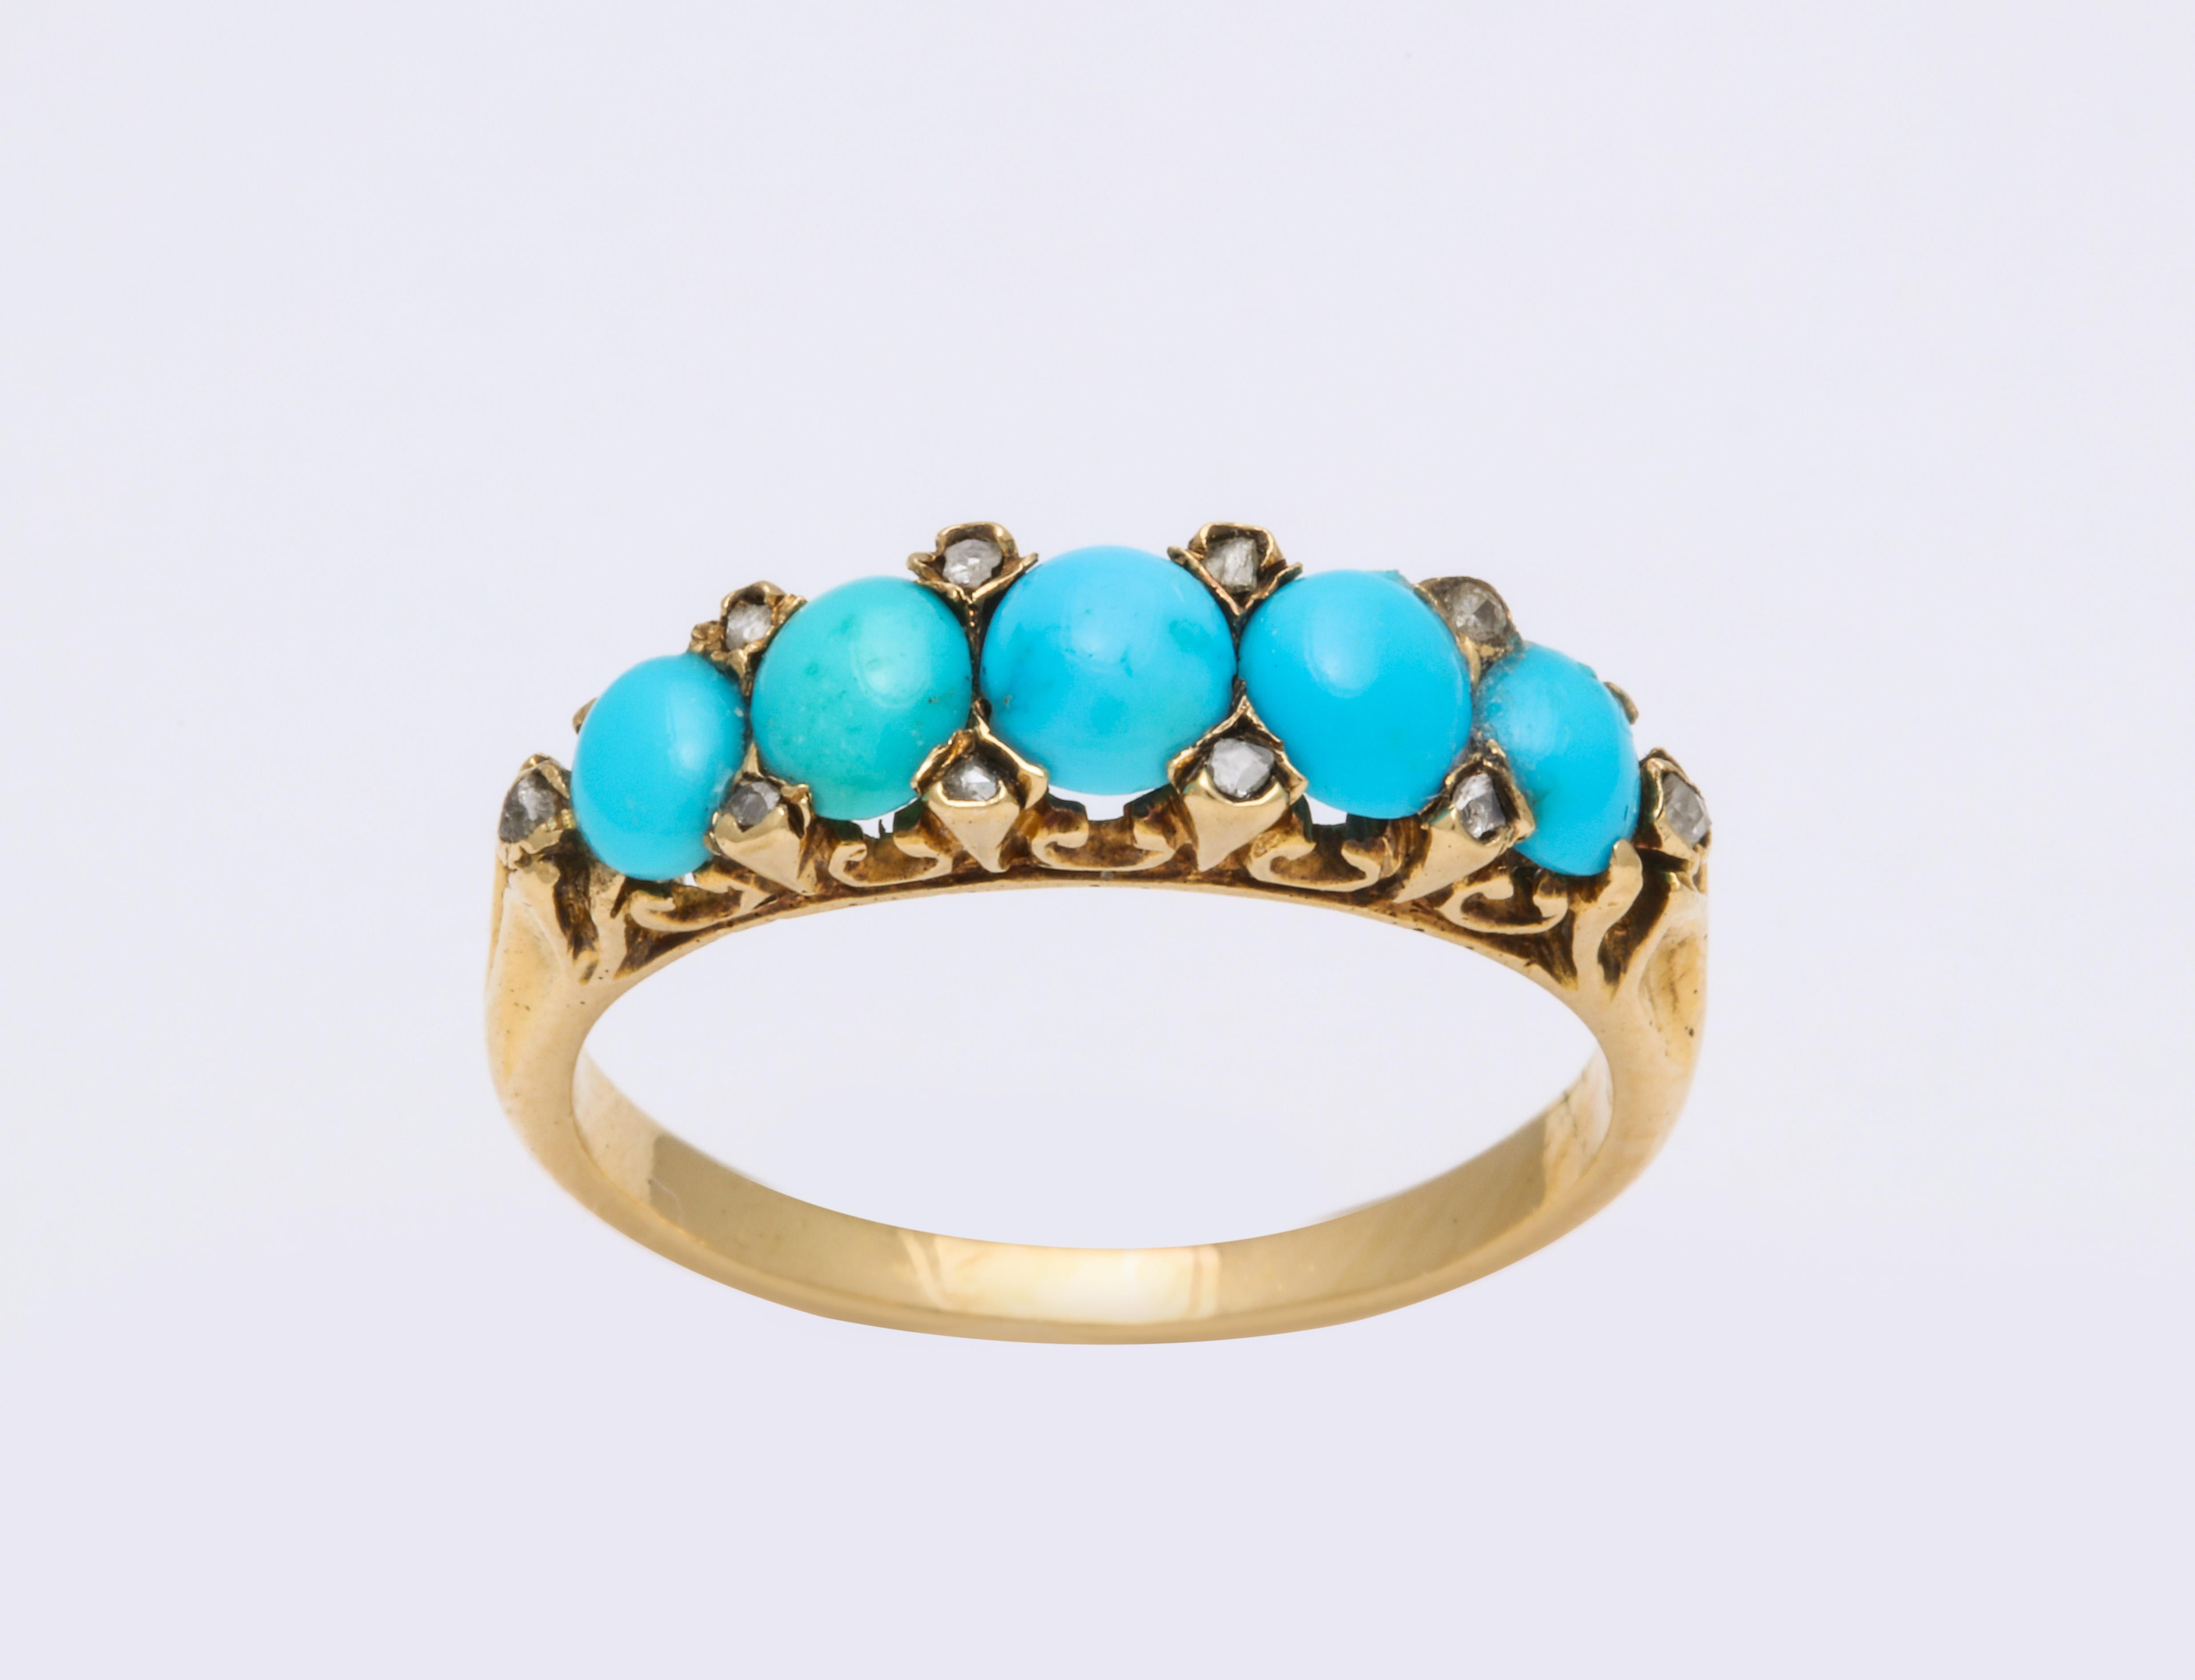 Une bande immaculée de turquoises ovales brillantes et magnifiquement assorties provenant de Perse est mise en valeur par les minuscules diamants intercalés dans leur charmante monture architecturale en or 15 carats. Malgré leur petite taille, les